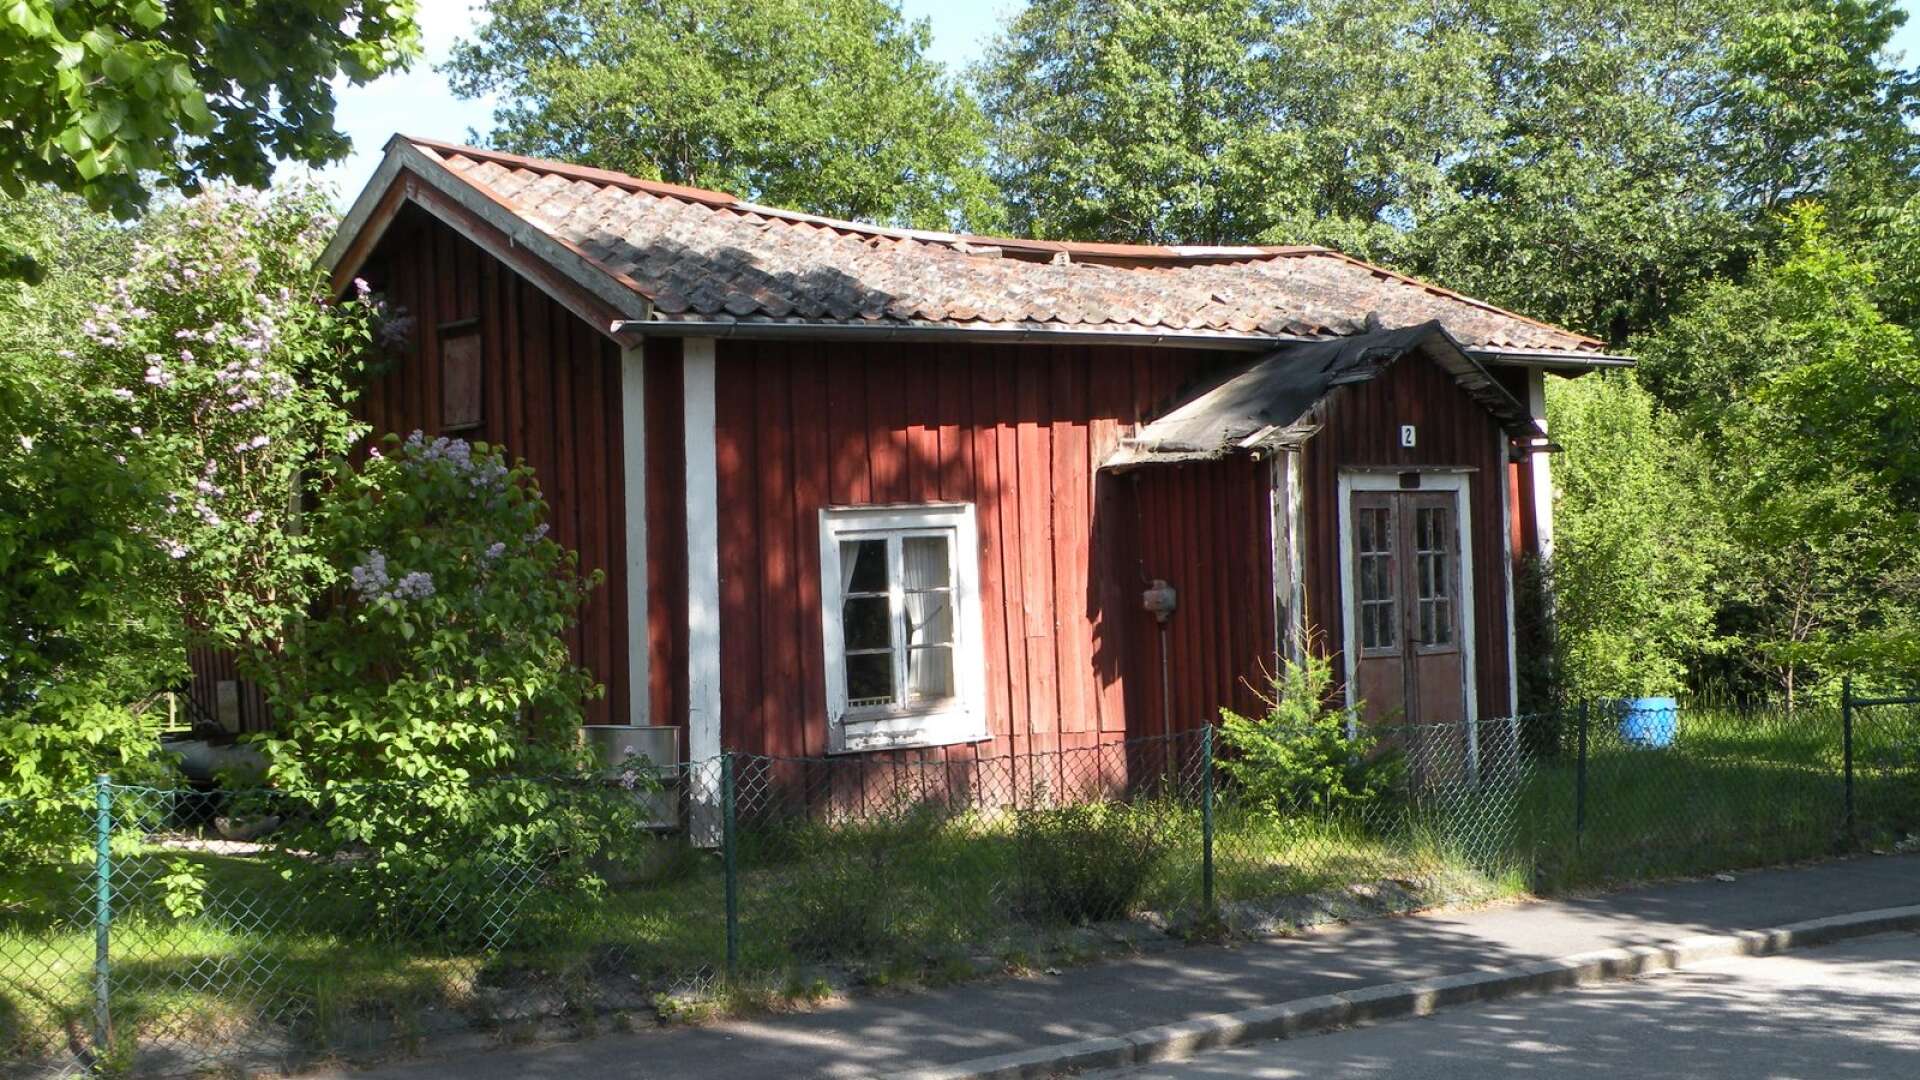  Sjögrenstugan finns omnämnd som Karlskogas kanske äldsta hus. Bilden är tagen för tio år sedan. Skorstenen hade då rasat flera år tidigare och här ser man även hur taket börjat ge med sig. 